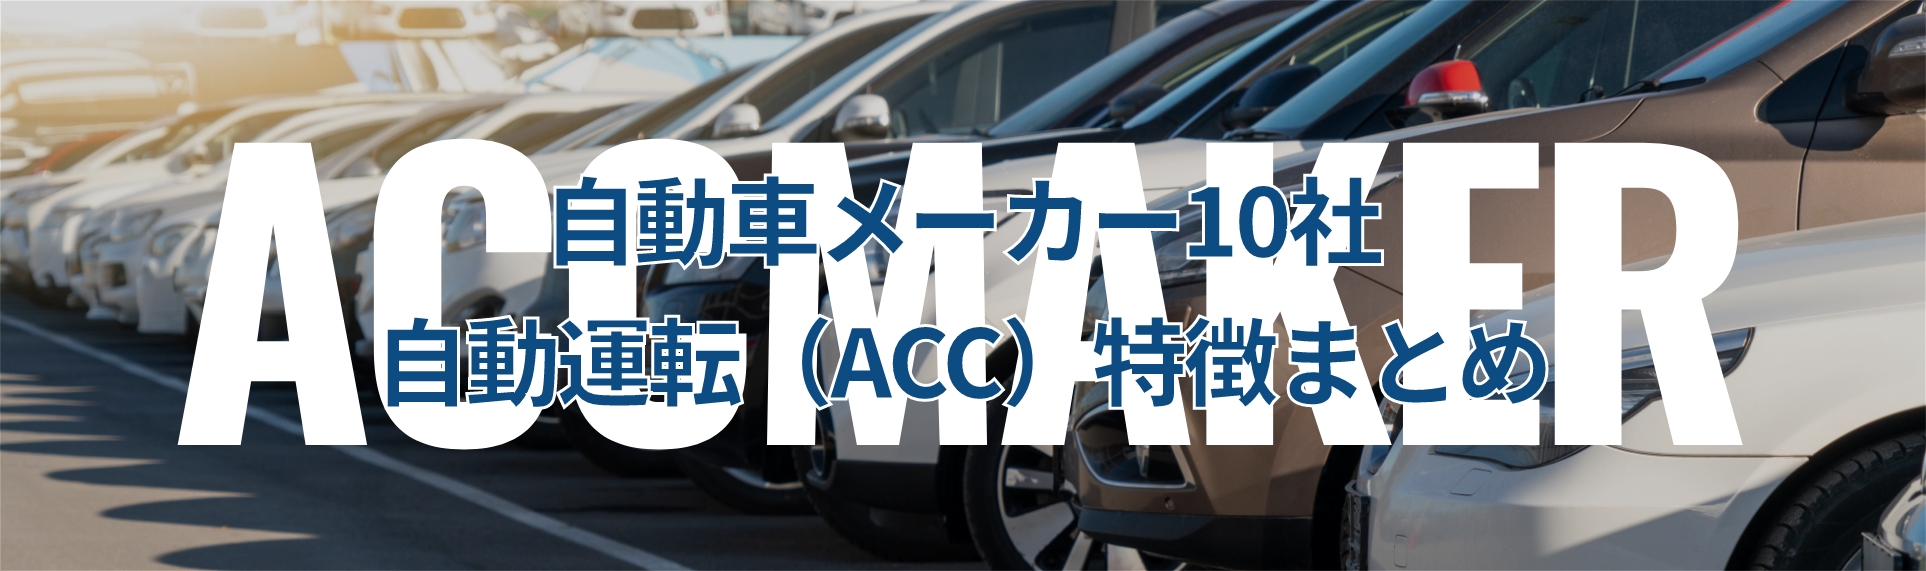 自動車メーカー10社、自動運転（ACC）特徴まとめ